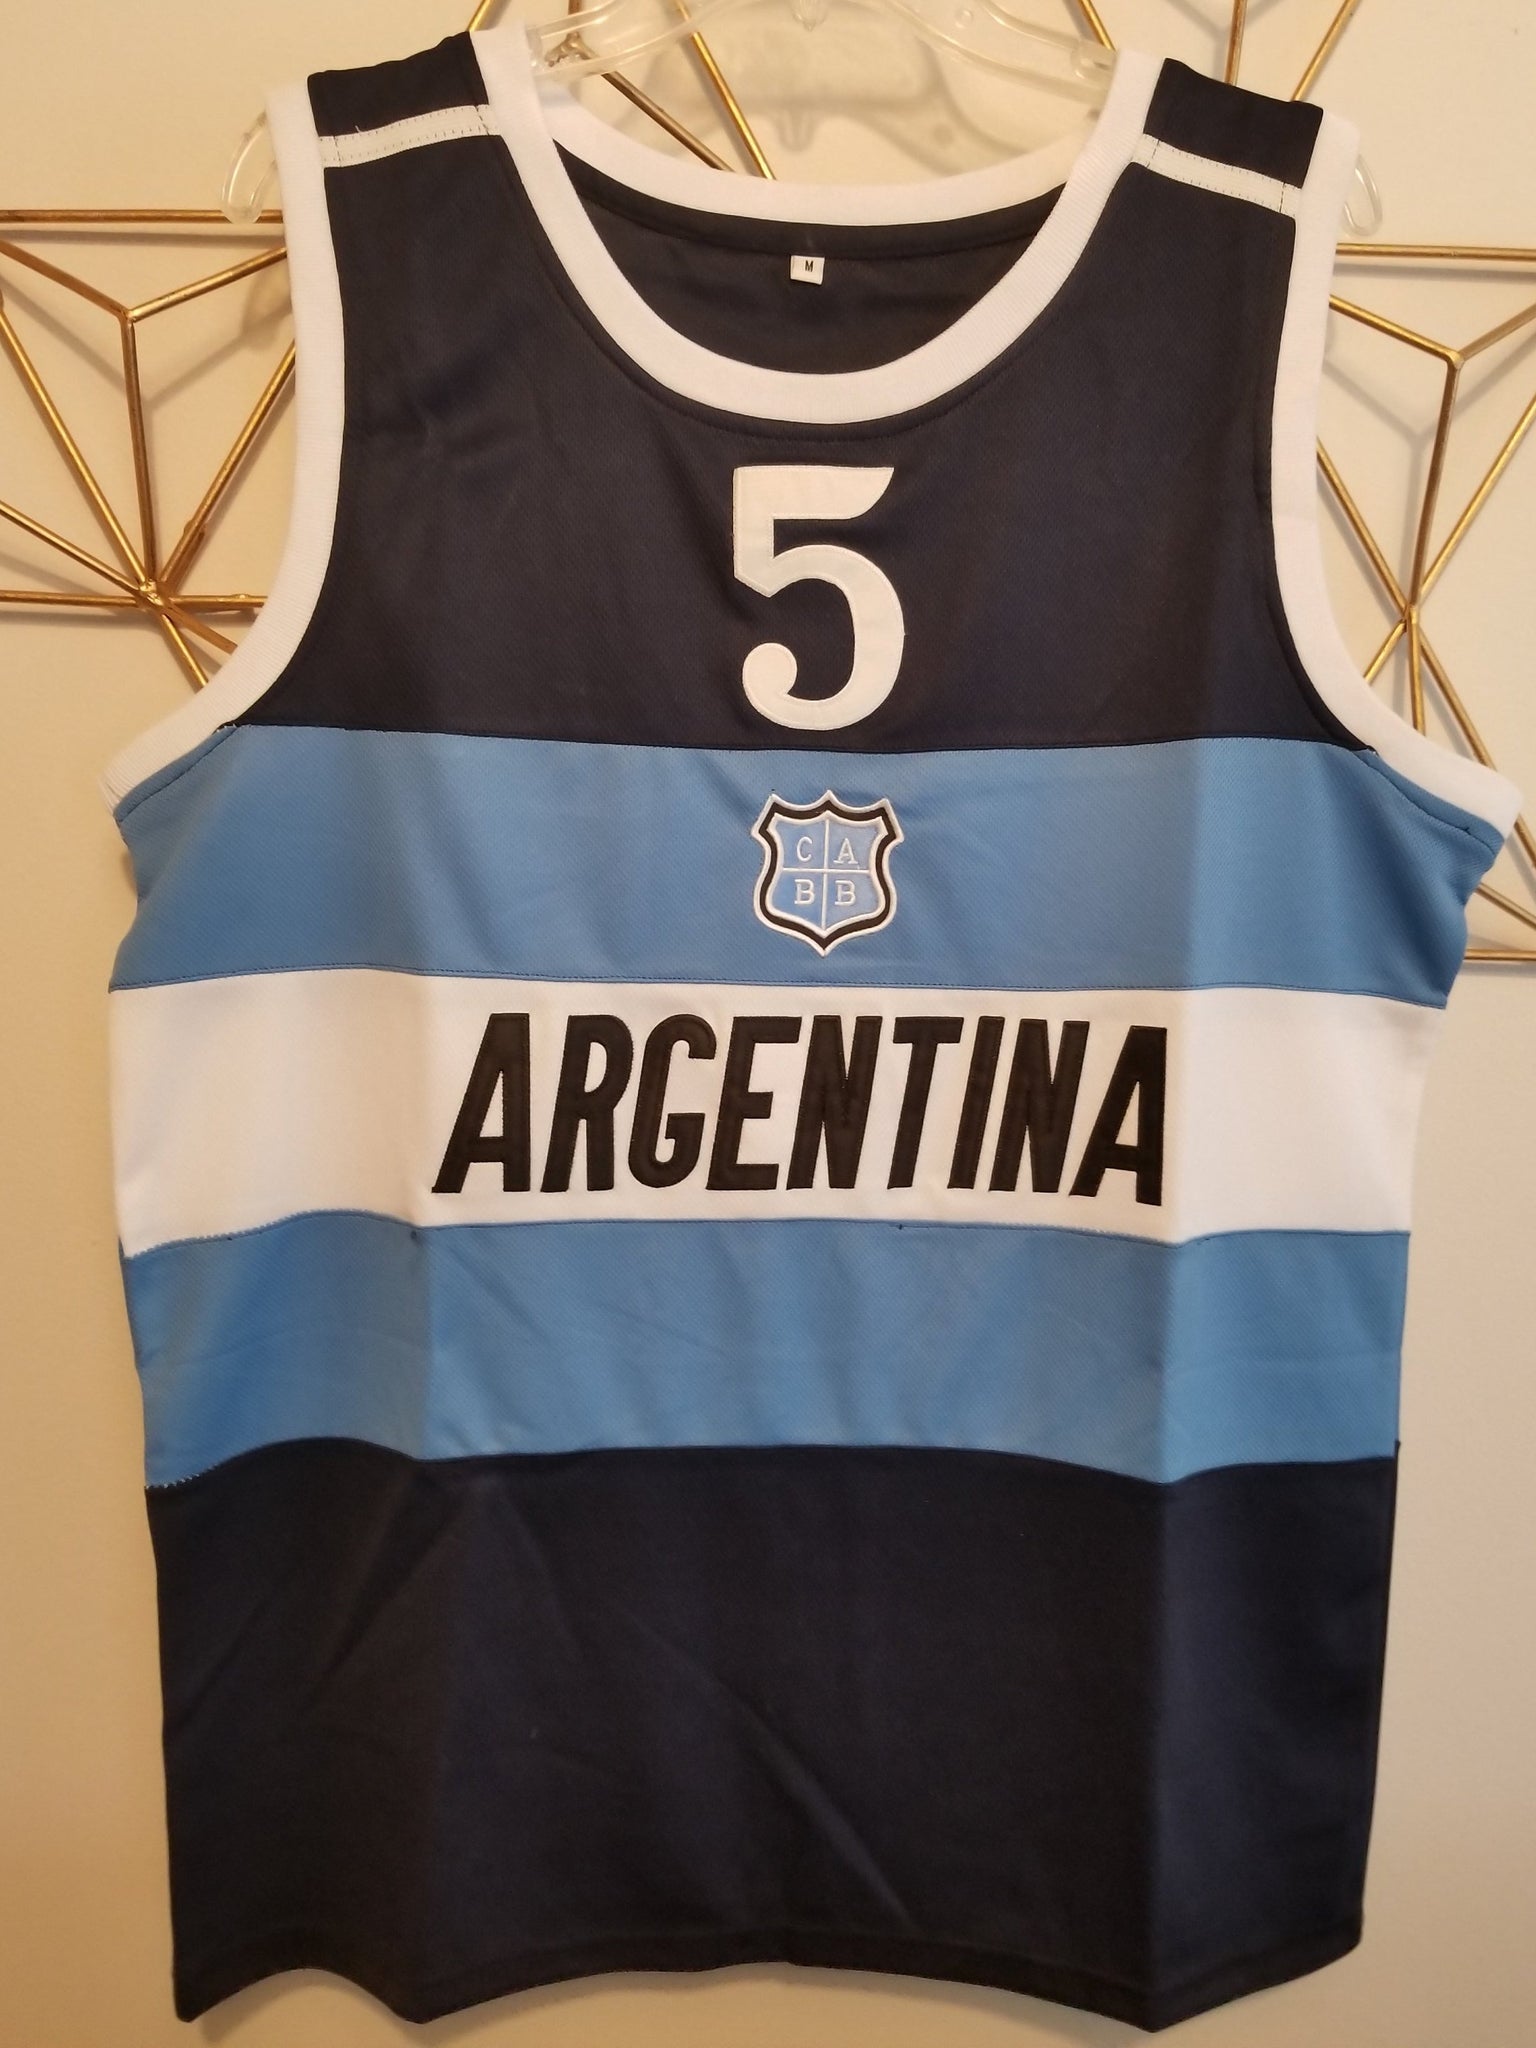 manu ginobili argentina basketball jersey